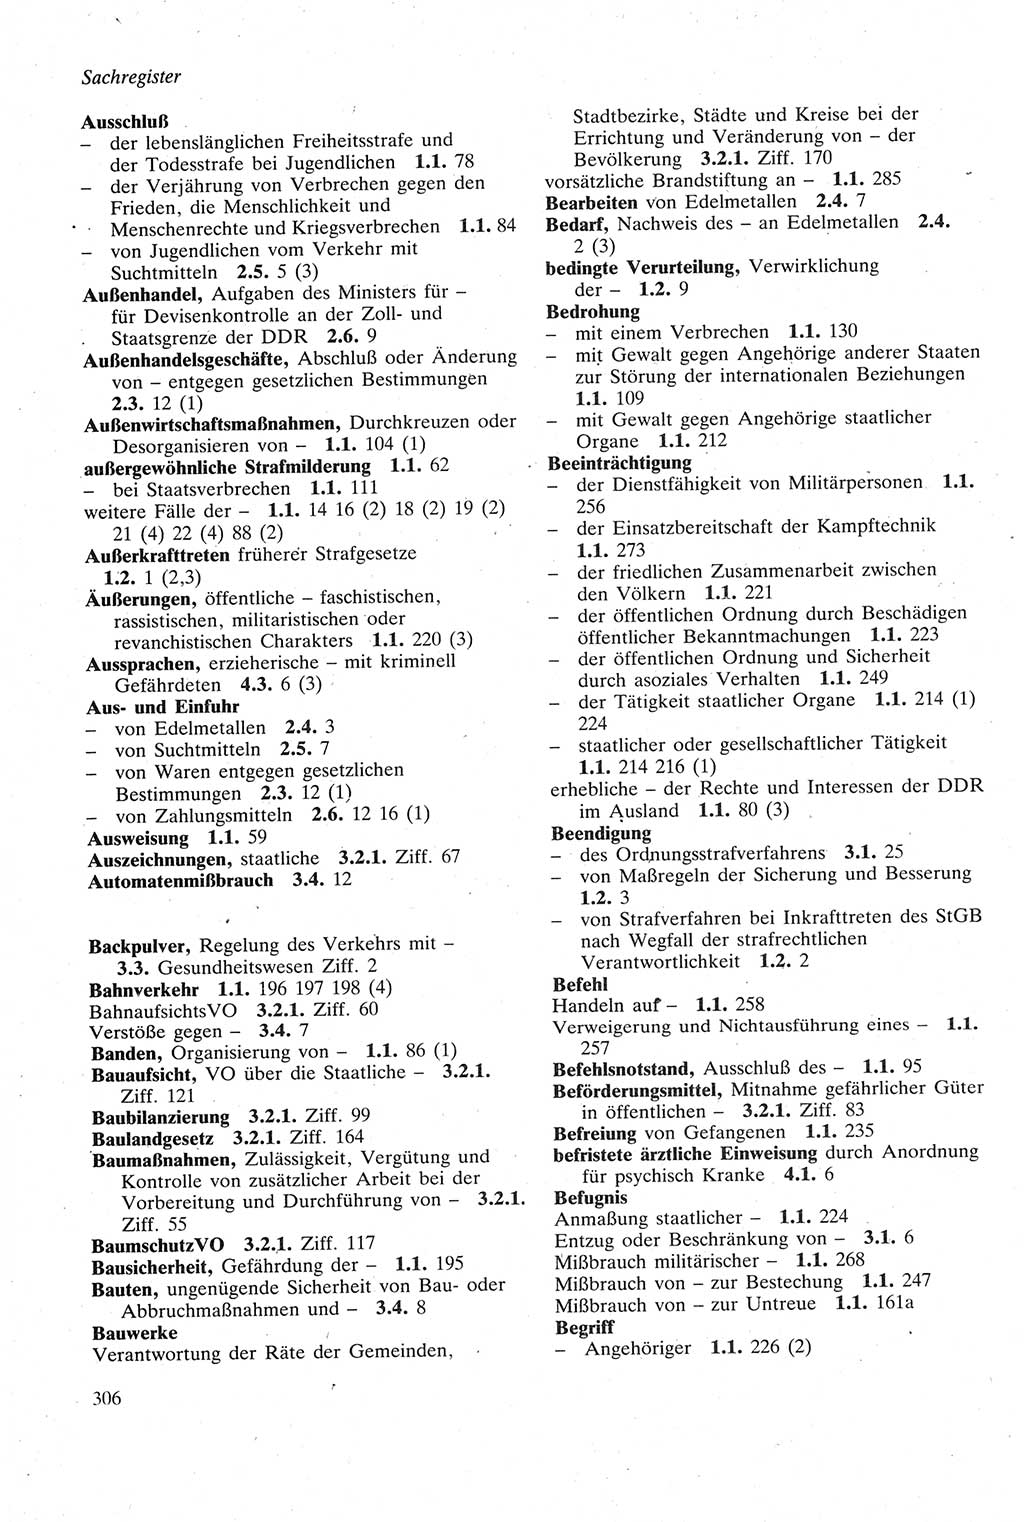 Strafgesetzbuch (StGB) der Deutschen Demokratischen Republik (DDR) sowie angrenzende Gesetze und Bestimmungen 1979, Seite 306 (StGB DDR Ges. Best. 1979, S. 306)